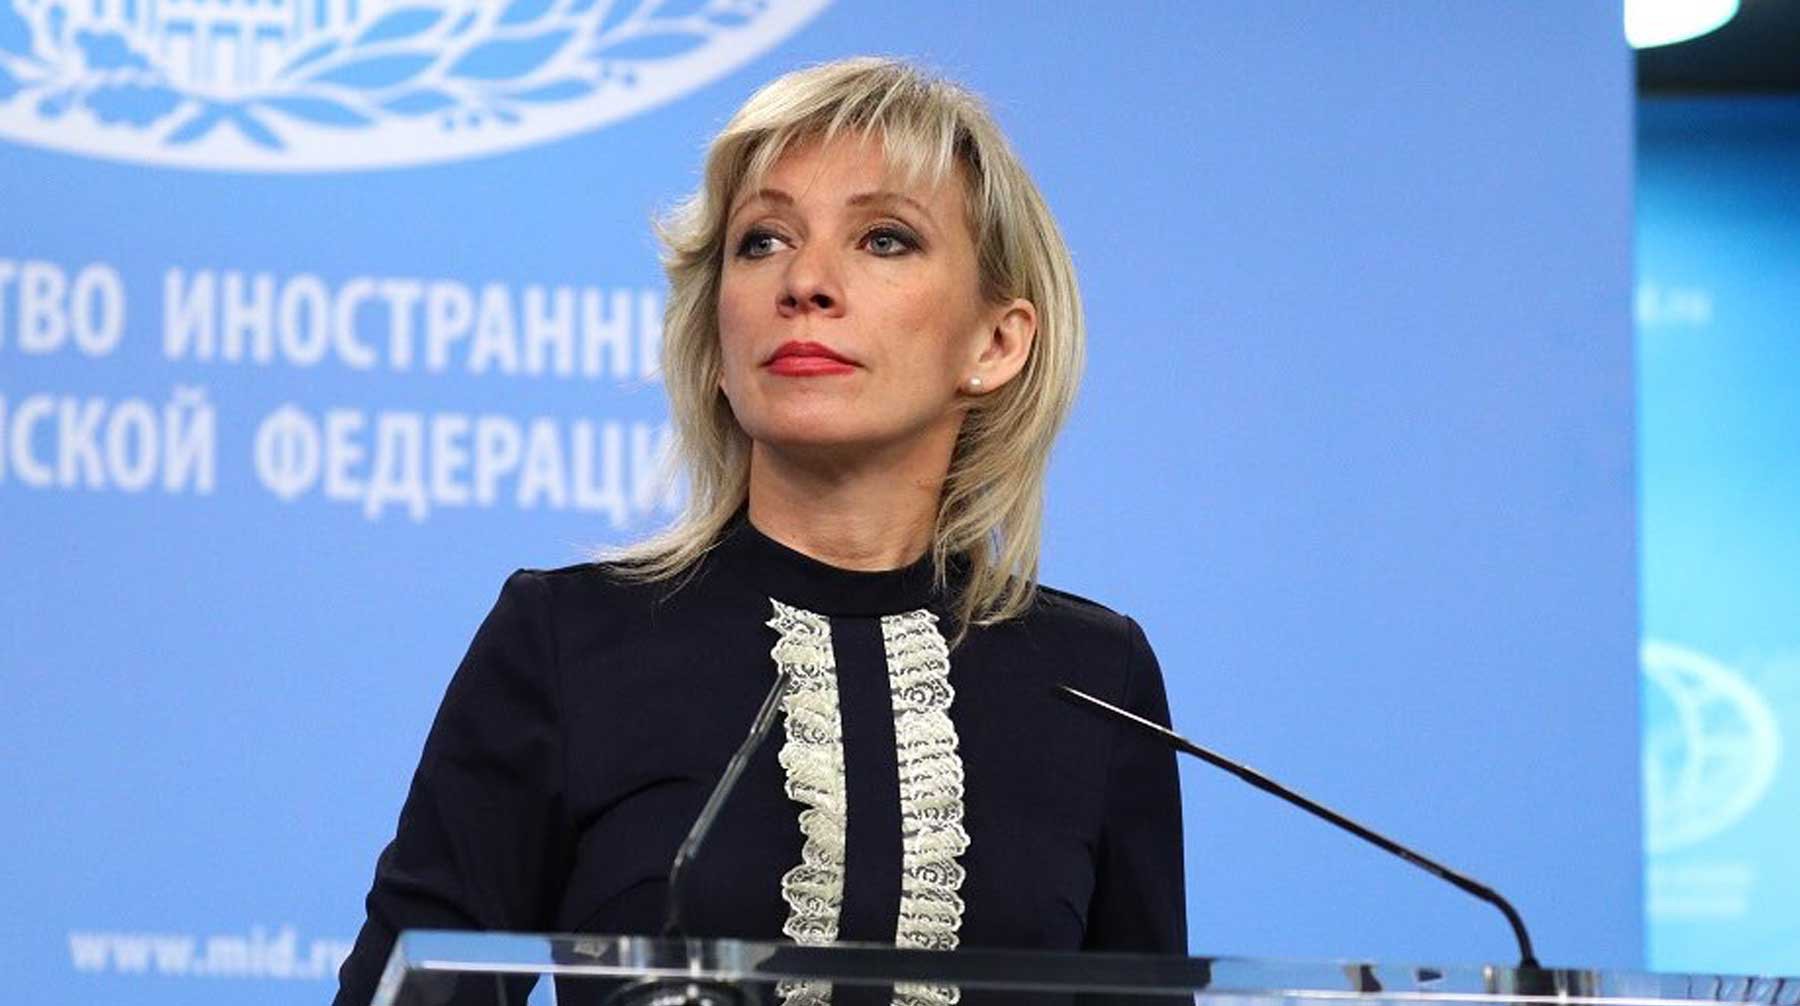 Dailystorm - Захарова пообещала, что Россия будет защищать Ассанжа в международных организациях